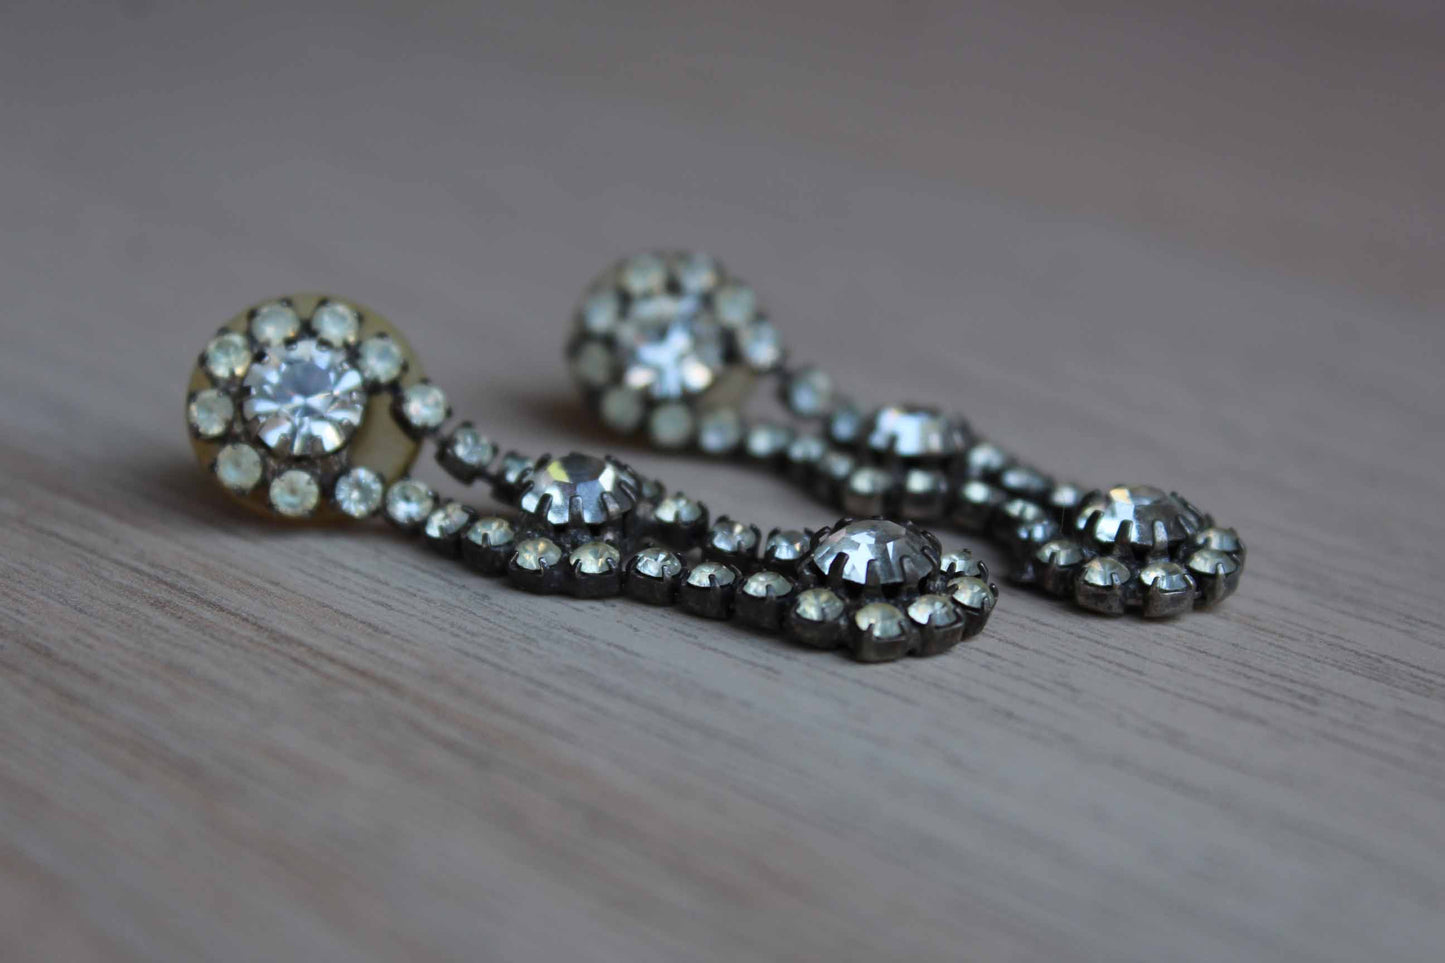 Pierced Silver Prong-Set Rhinestone Drop Earrings